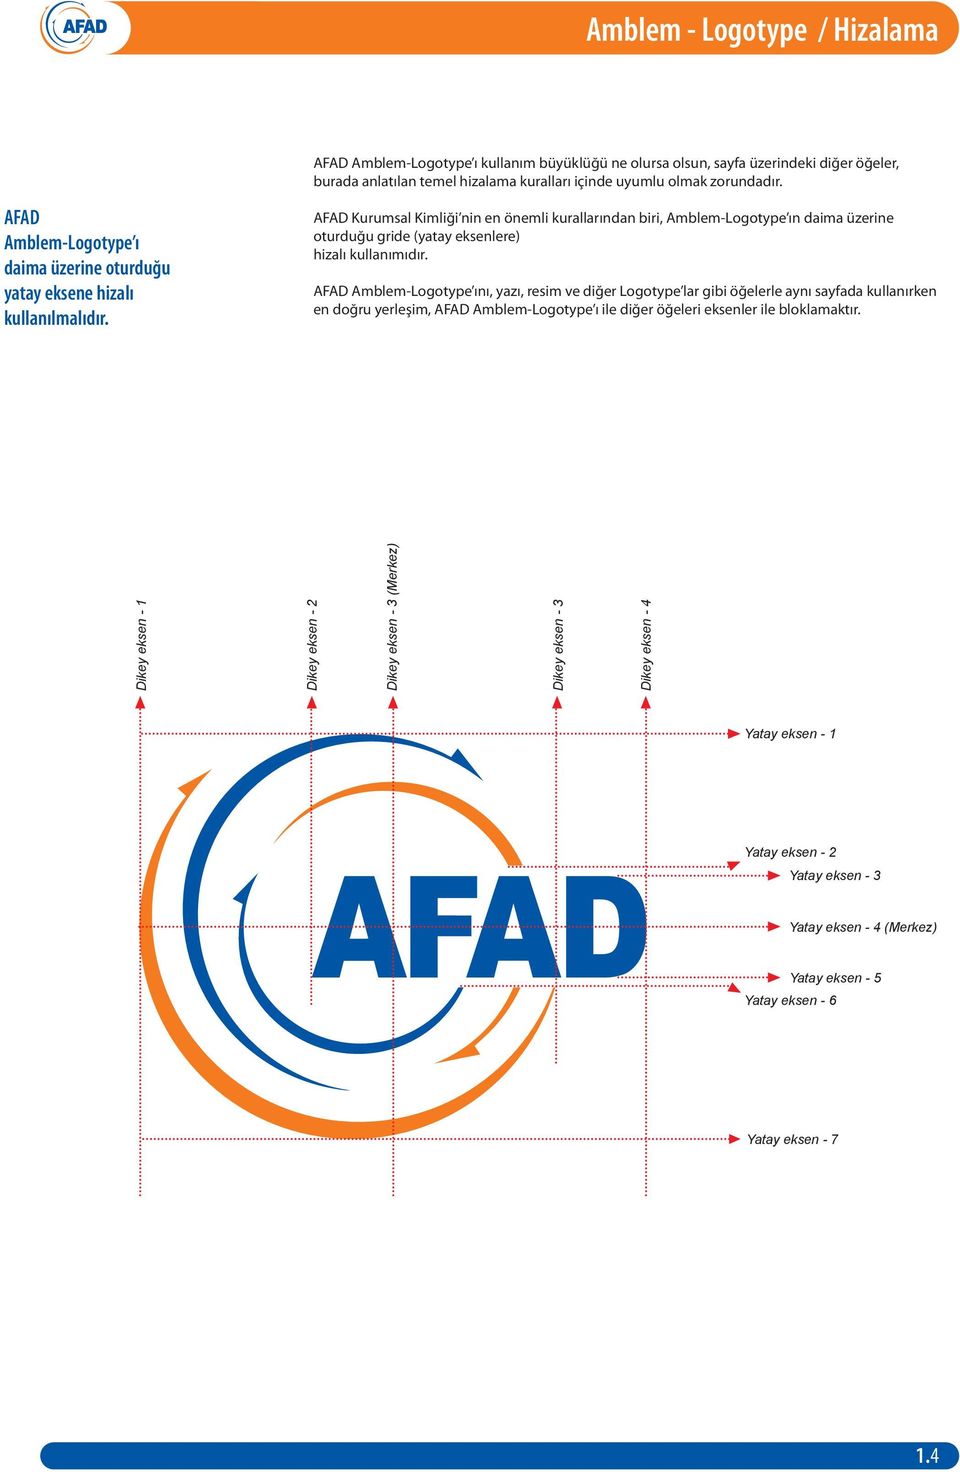 AFAD Kurumsal Kimliği nin en önemli kurallarından biri, Amblem-Logotype ın daima üzerine oturduğu gride (yatay eksenlere) hizalı kullanımıdır.